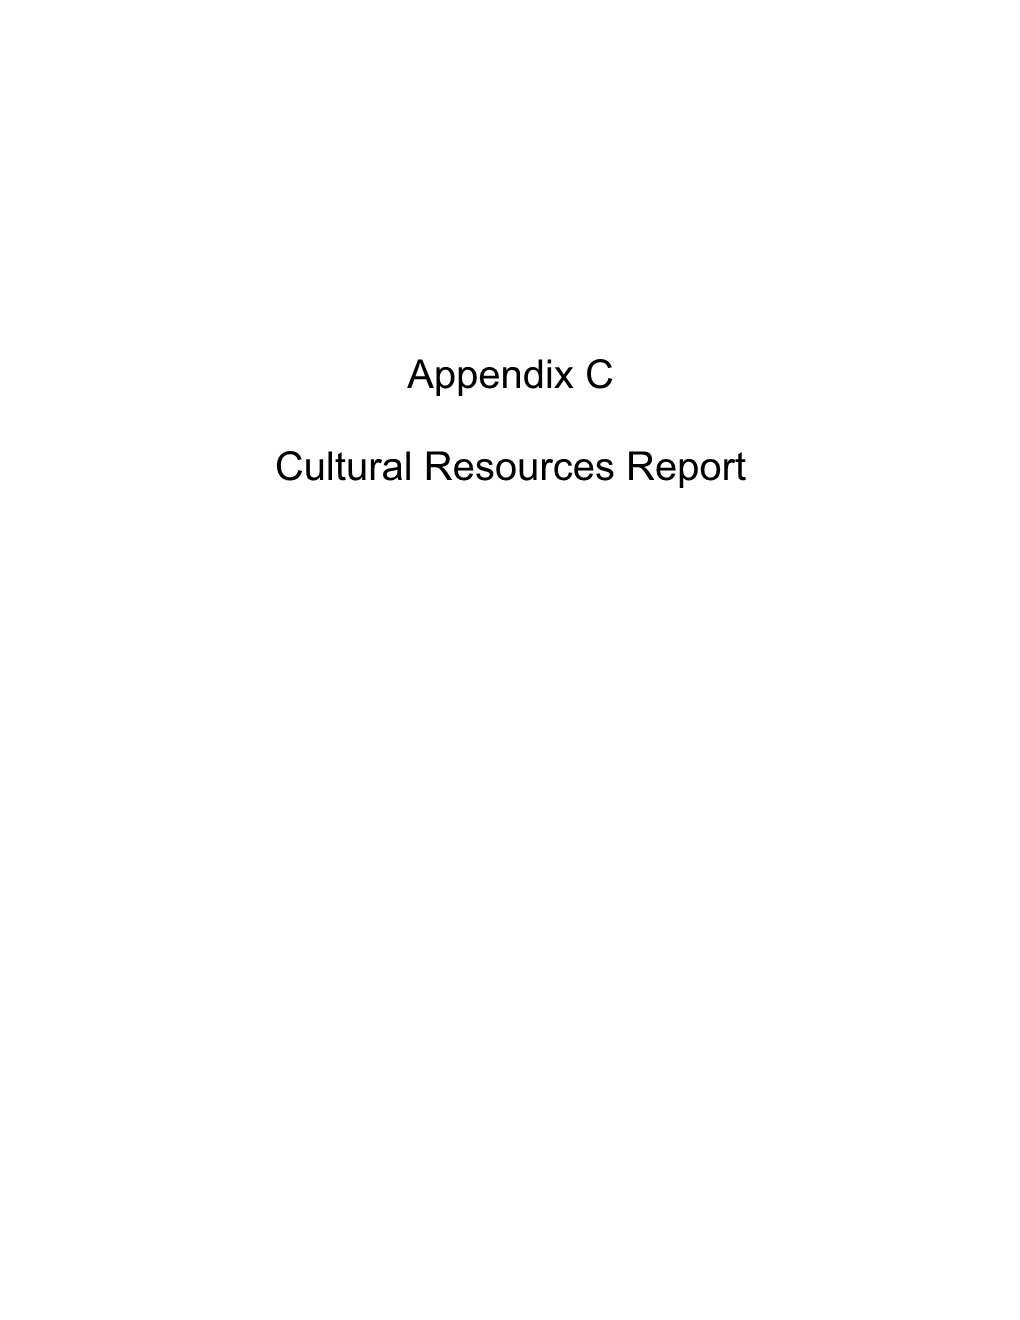 Appendix C Cultural Resources Report